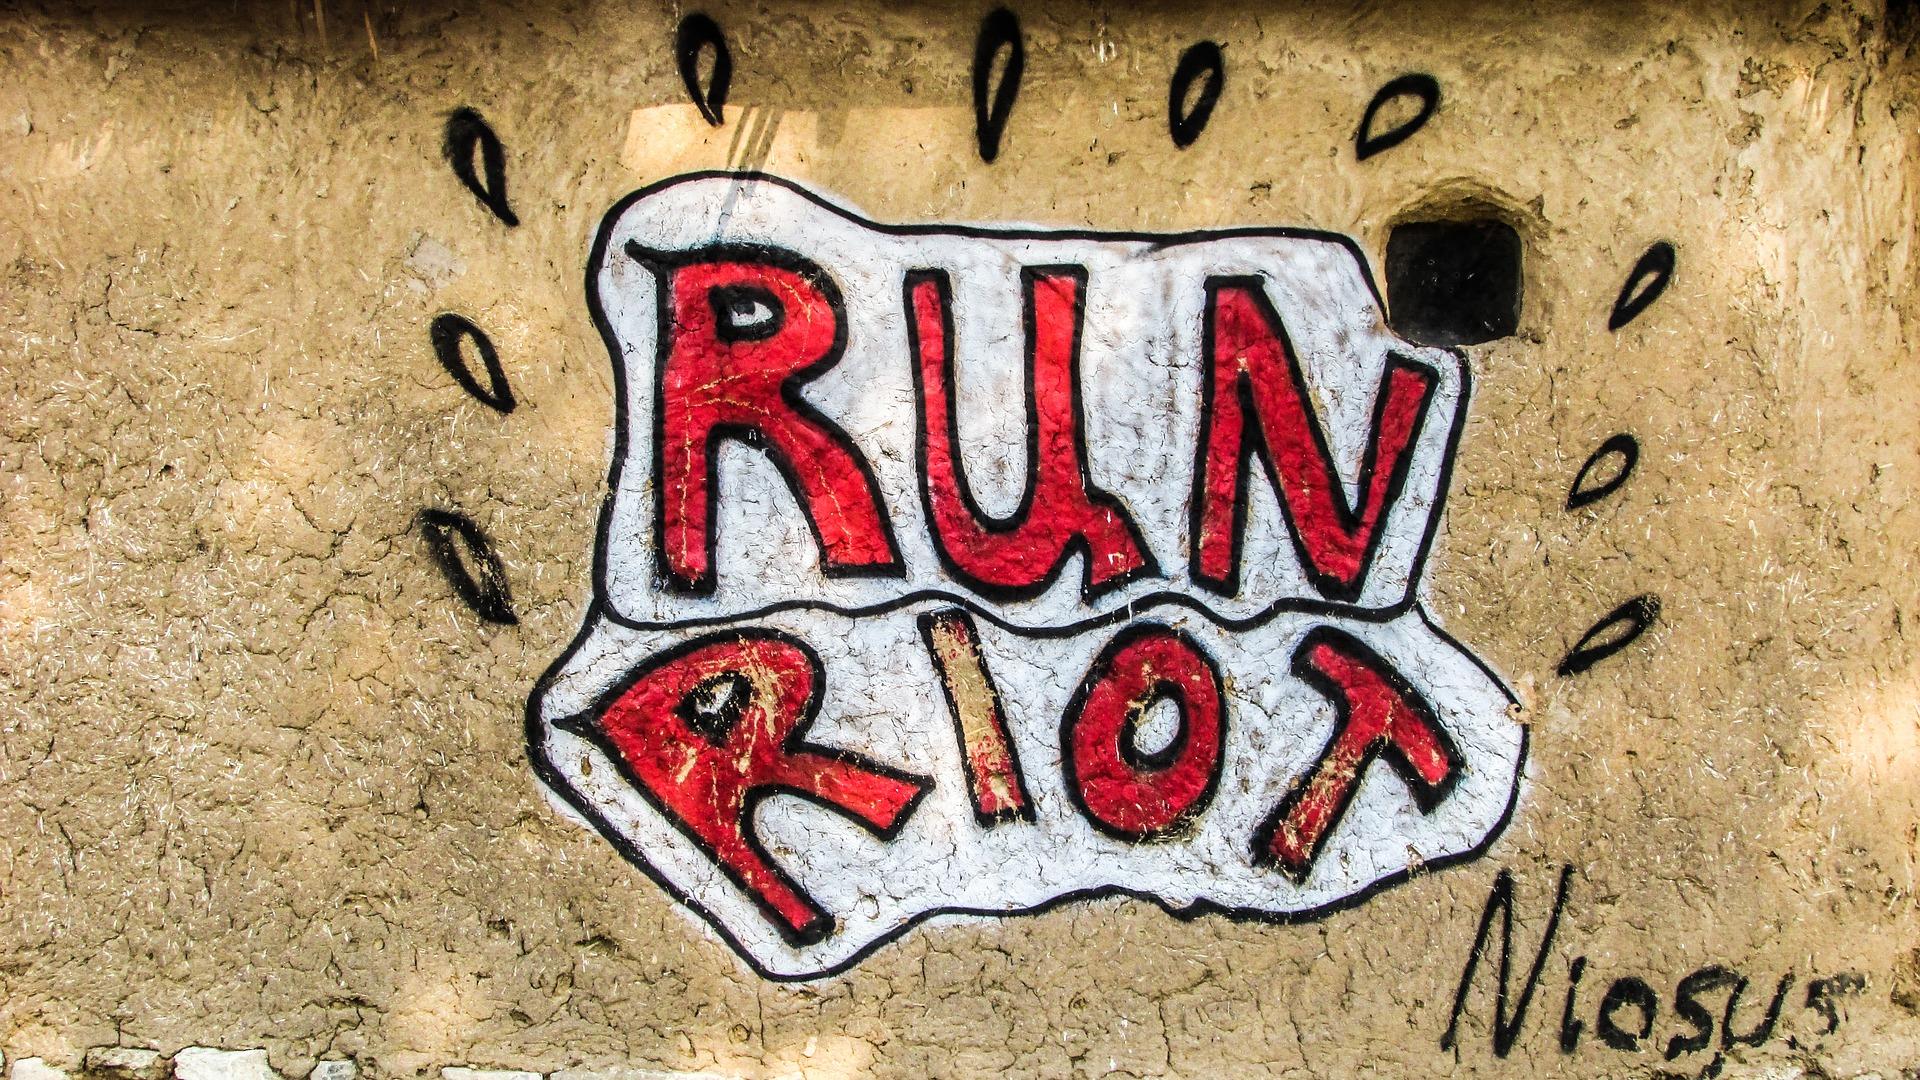 run riot 1623305 1920 - Communiqué Spécial : A.O.A. annonce une Purge dans le Mouvement de la Chaos